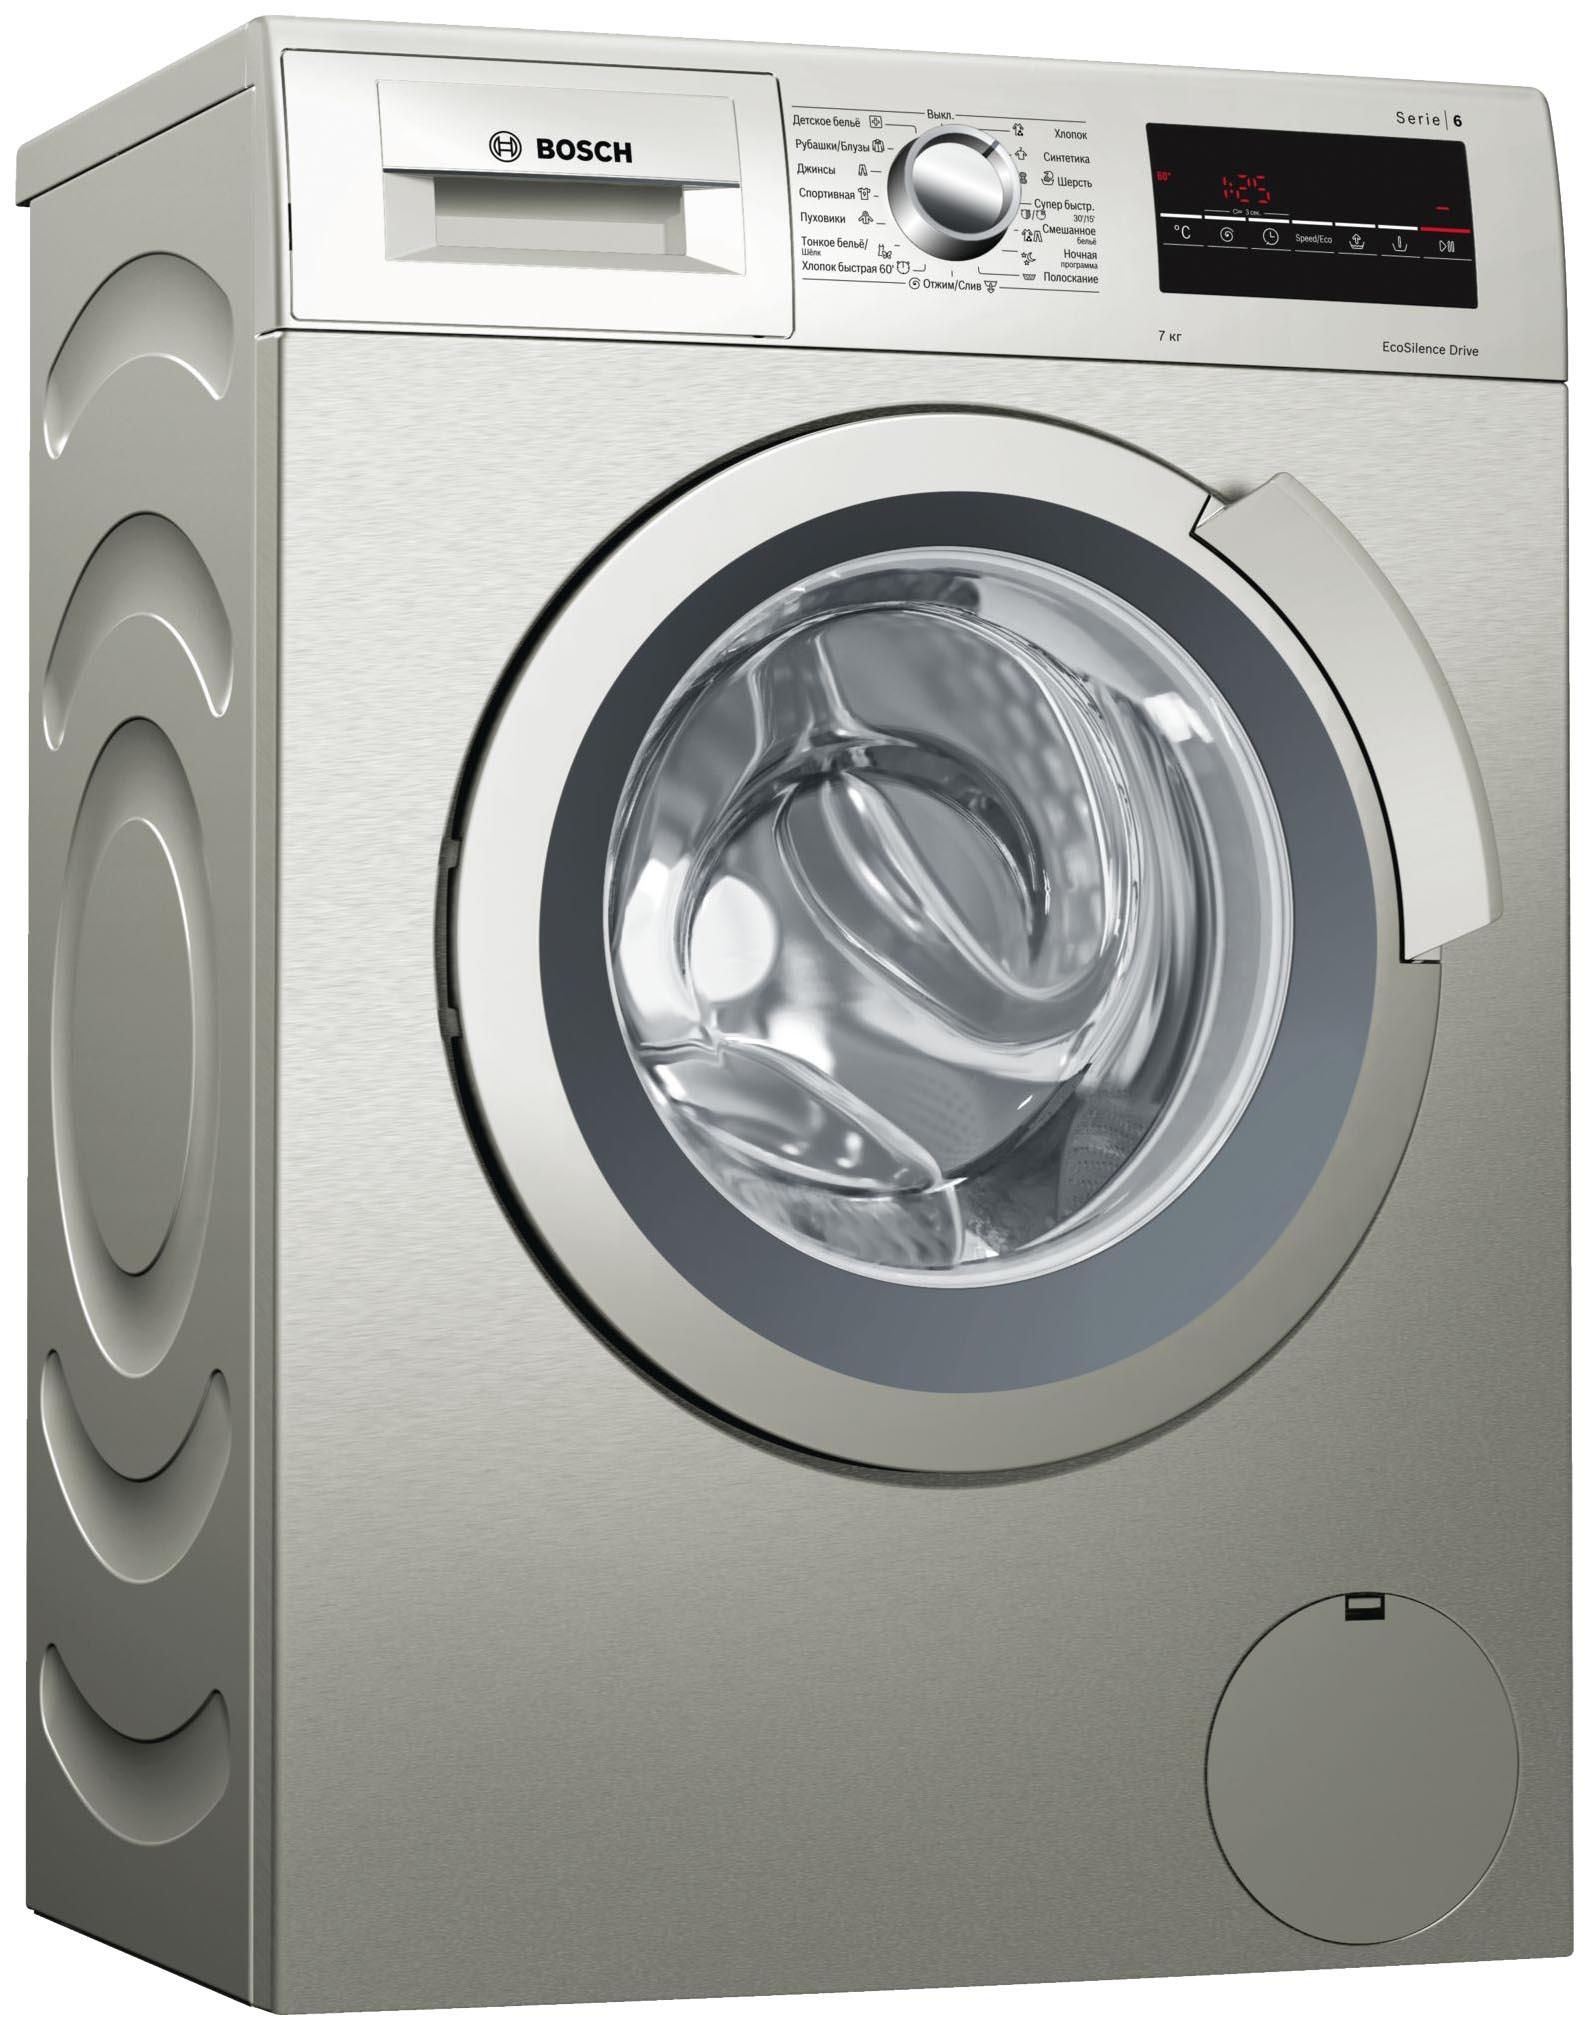 Что лучше bosch или lg стиральные машины: Какая стиральная машина лучше LG или Bosch?